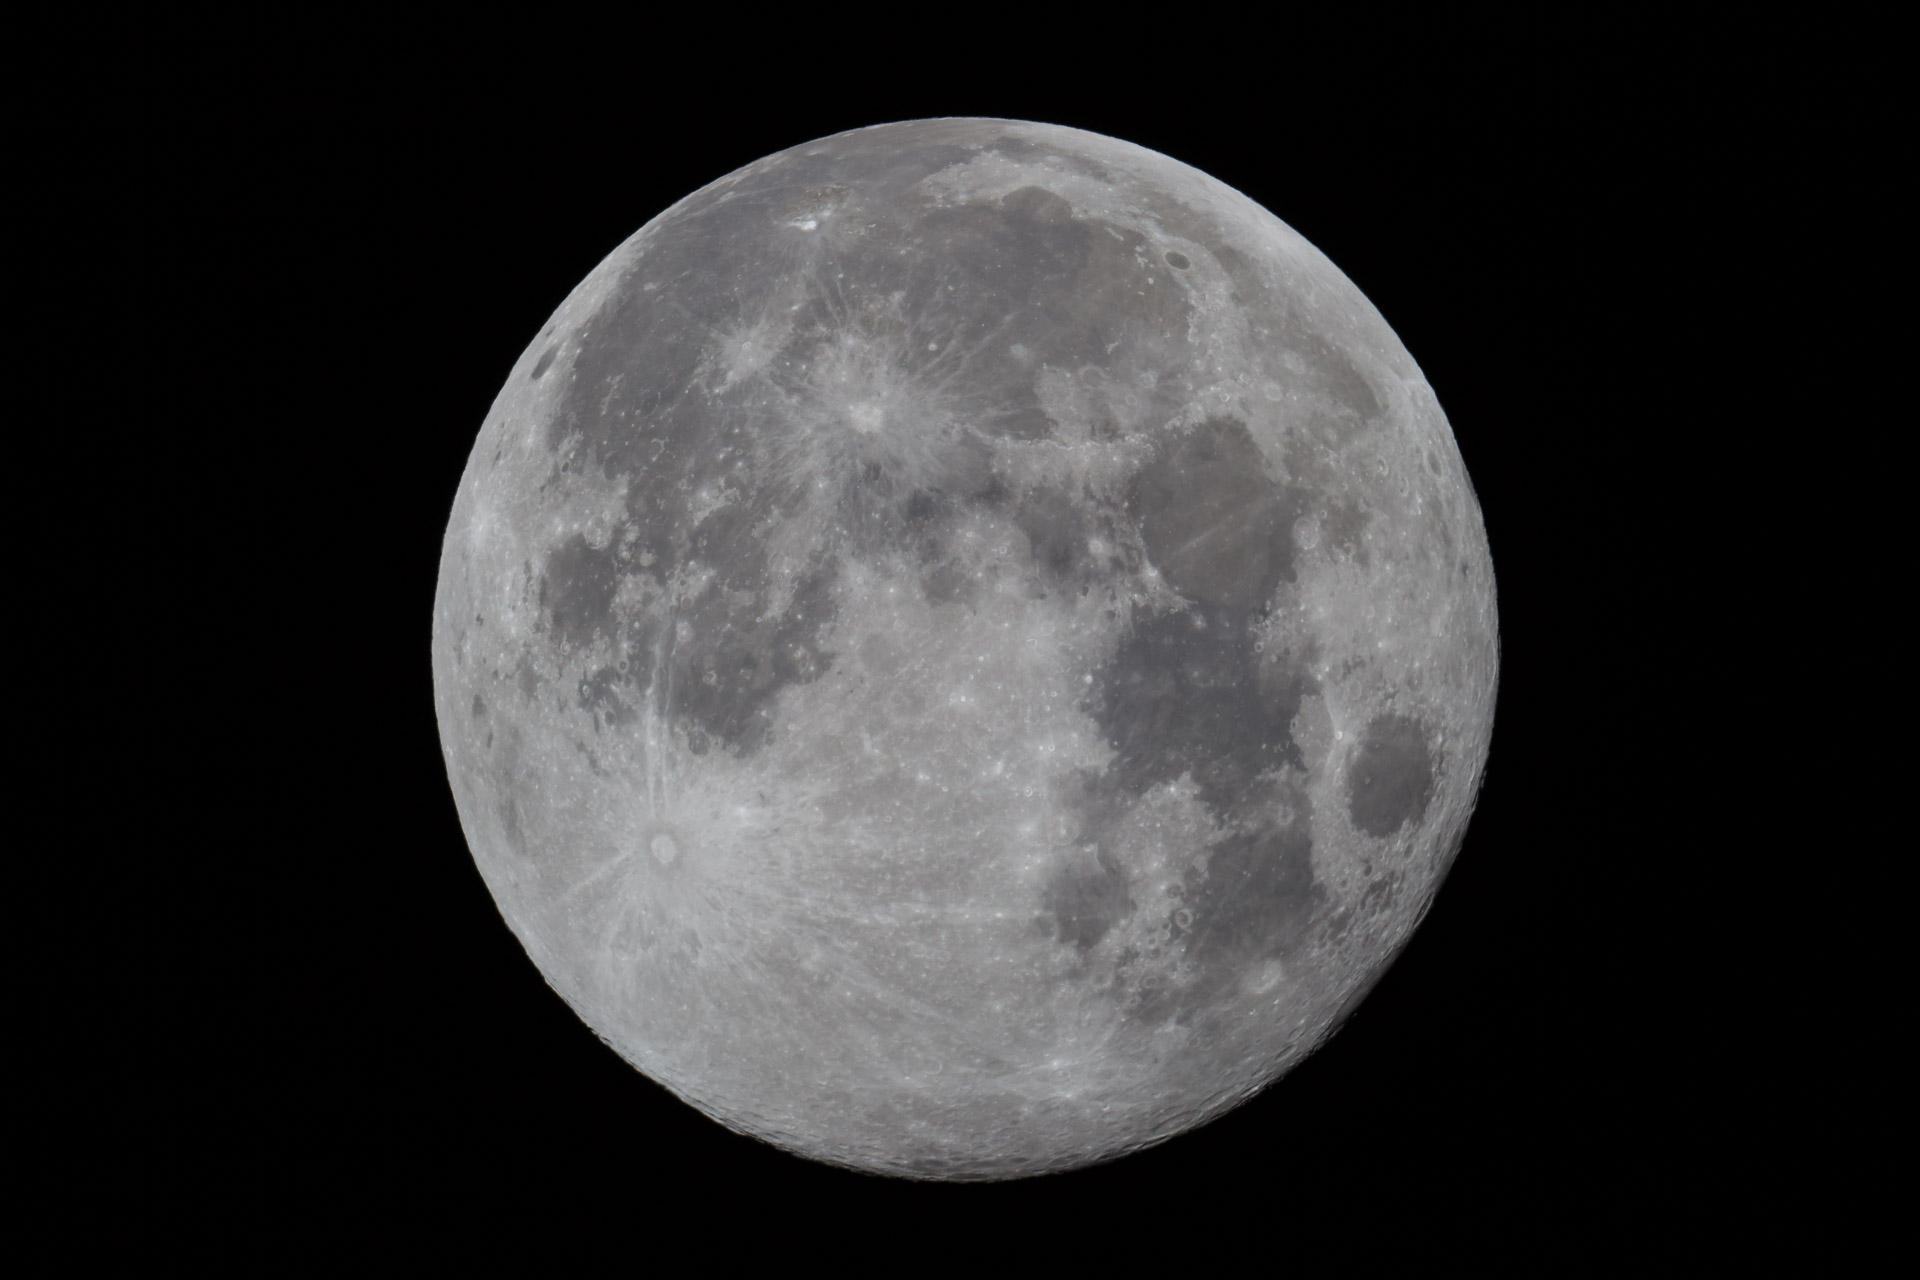 Mond durch ein Teleskop (Brennweite 1200mm)